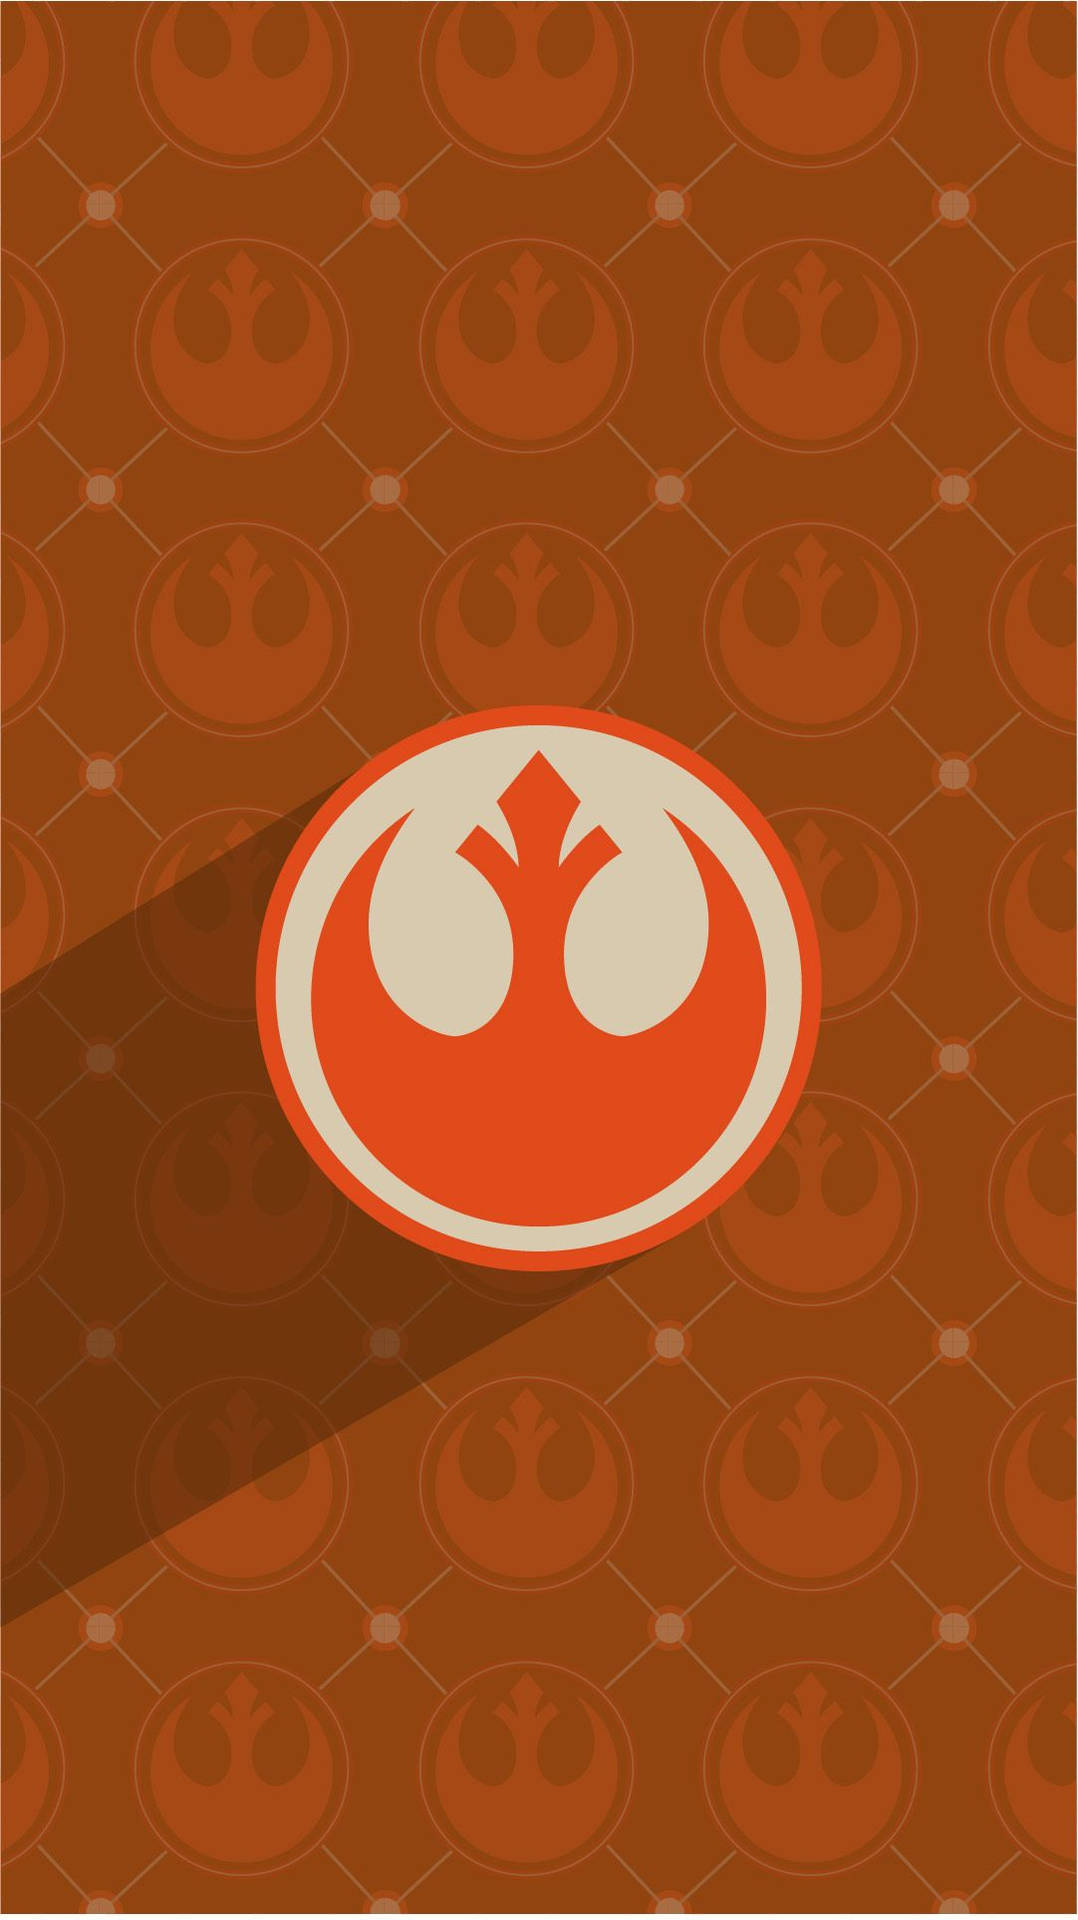 Star Wars Symbol Background